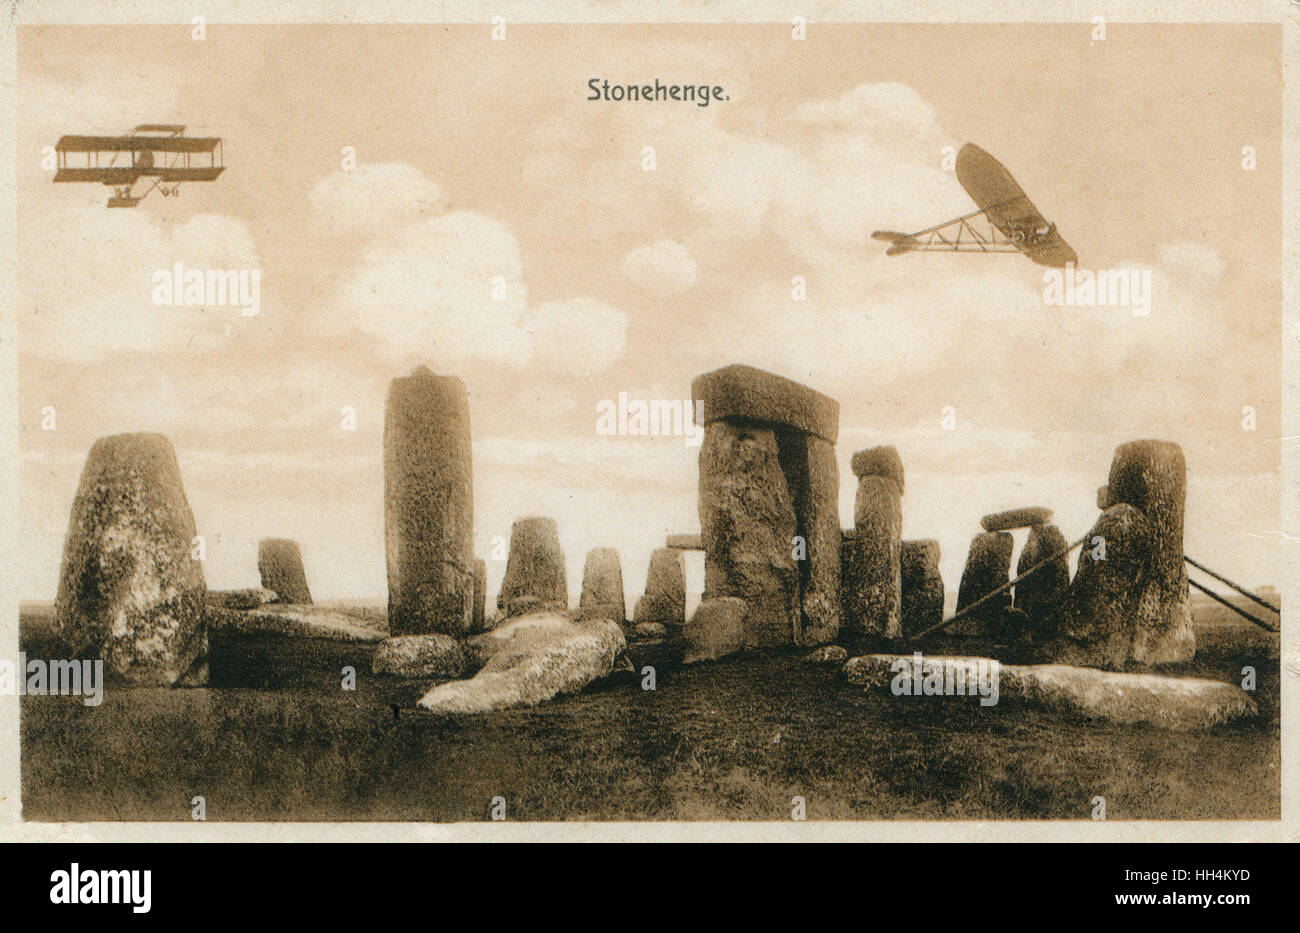 Early British aerei militari sulle manovre su Salisbury Plain - nella foto qui sopra il sito di Stonehenge (Wiltshire). Il velivolo sulla sinistra è un Bristol Boxkite biplanari a. Quattro furono acquistati nel 1911 dall'Ufficio di guerra e gli esempi sono stati venduti in Russia e in Austra Foto Stock